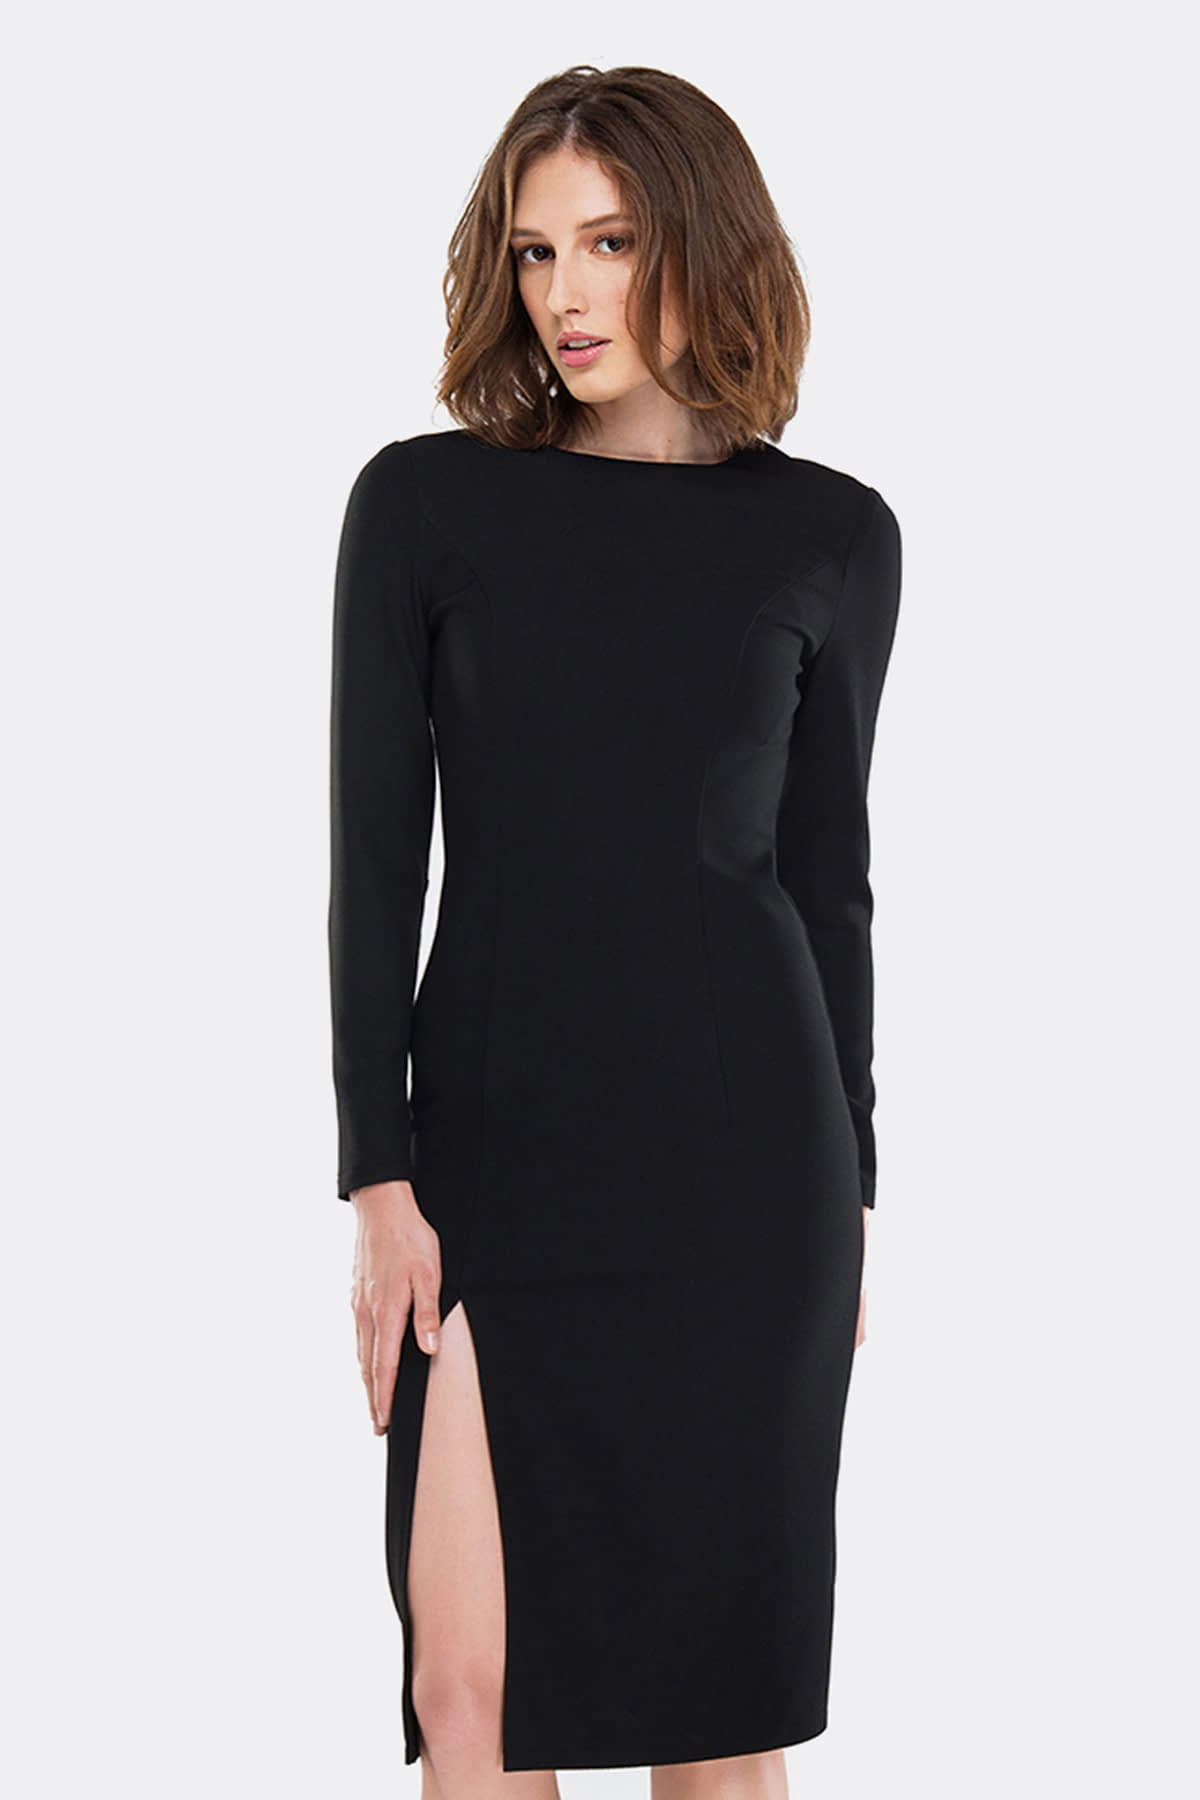 Платье-футляр черное с разрезом, фото 1